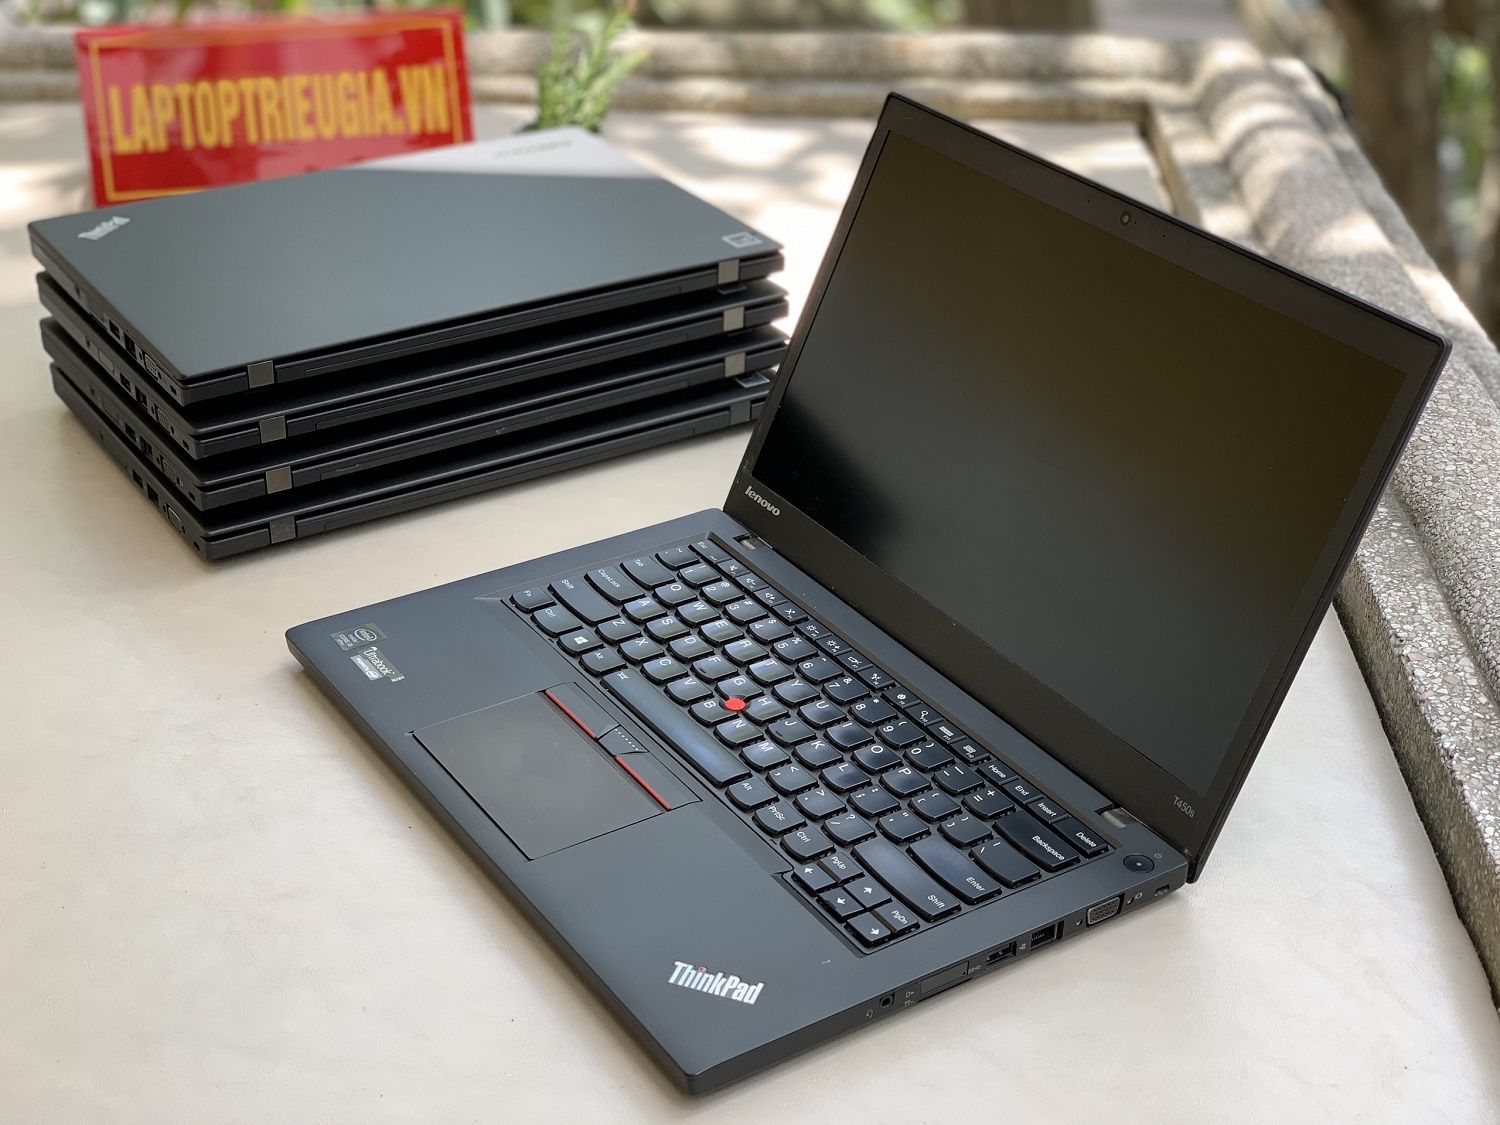 Lenovo Thinkpad T450s : i5-5300U | 4Gb | SSD 128Gb | 14.0 HD+  Máy đẹp likenew